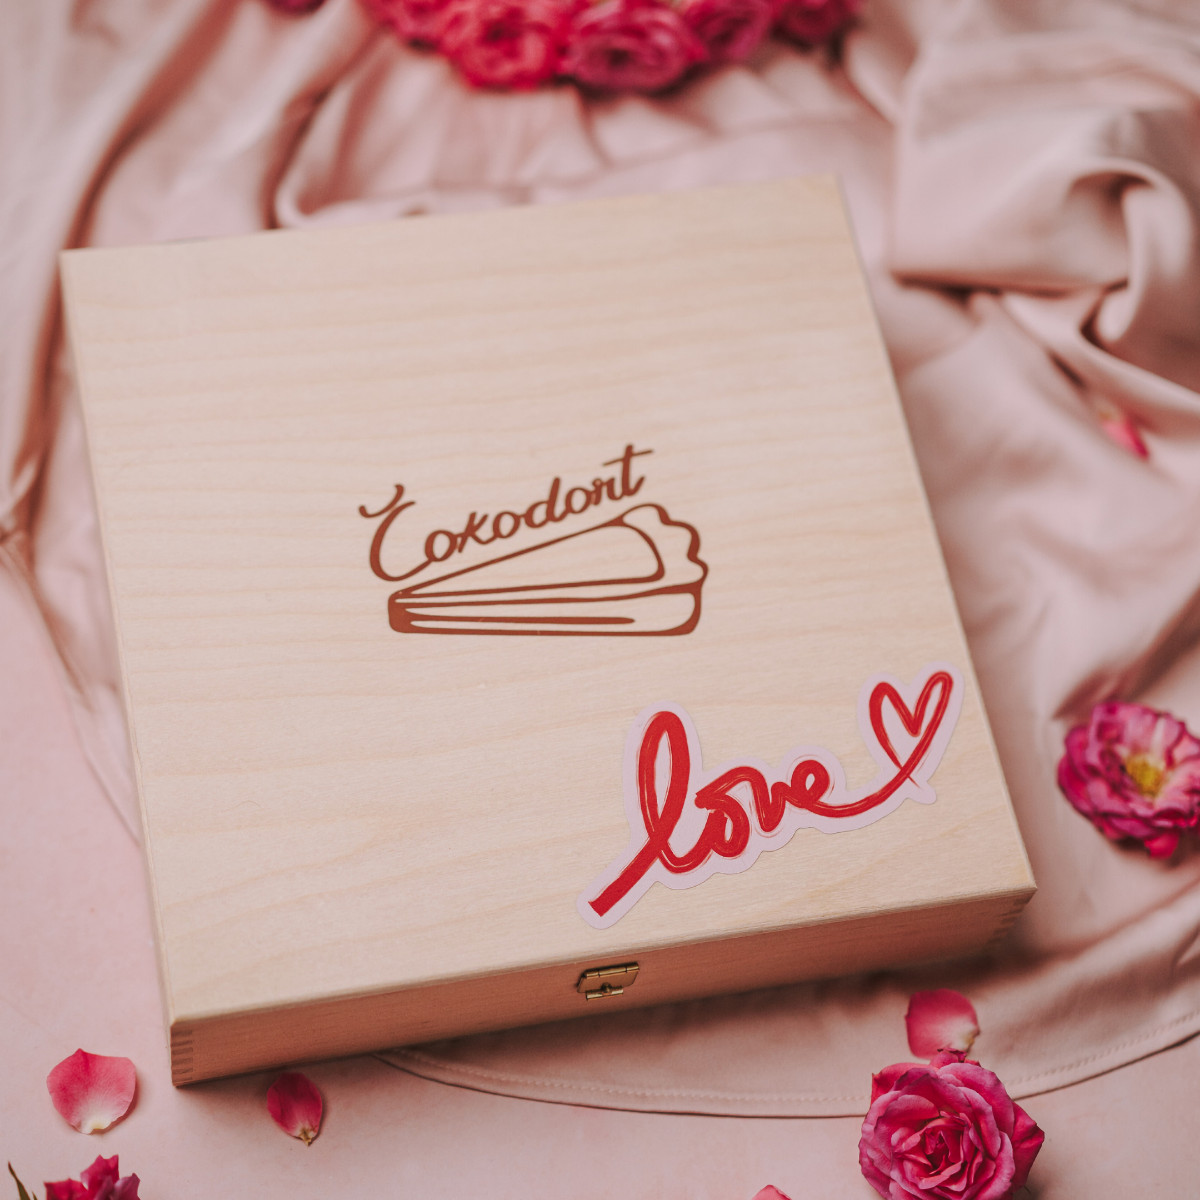 Dřevěná dárková krabice Čokodort s elegantním logem a nápisem "Love" v srdcovém designu, obklopená romantickými růžovými poupěty na saténové růžové látce